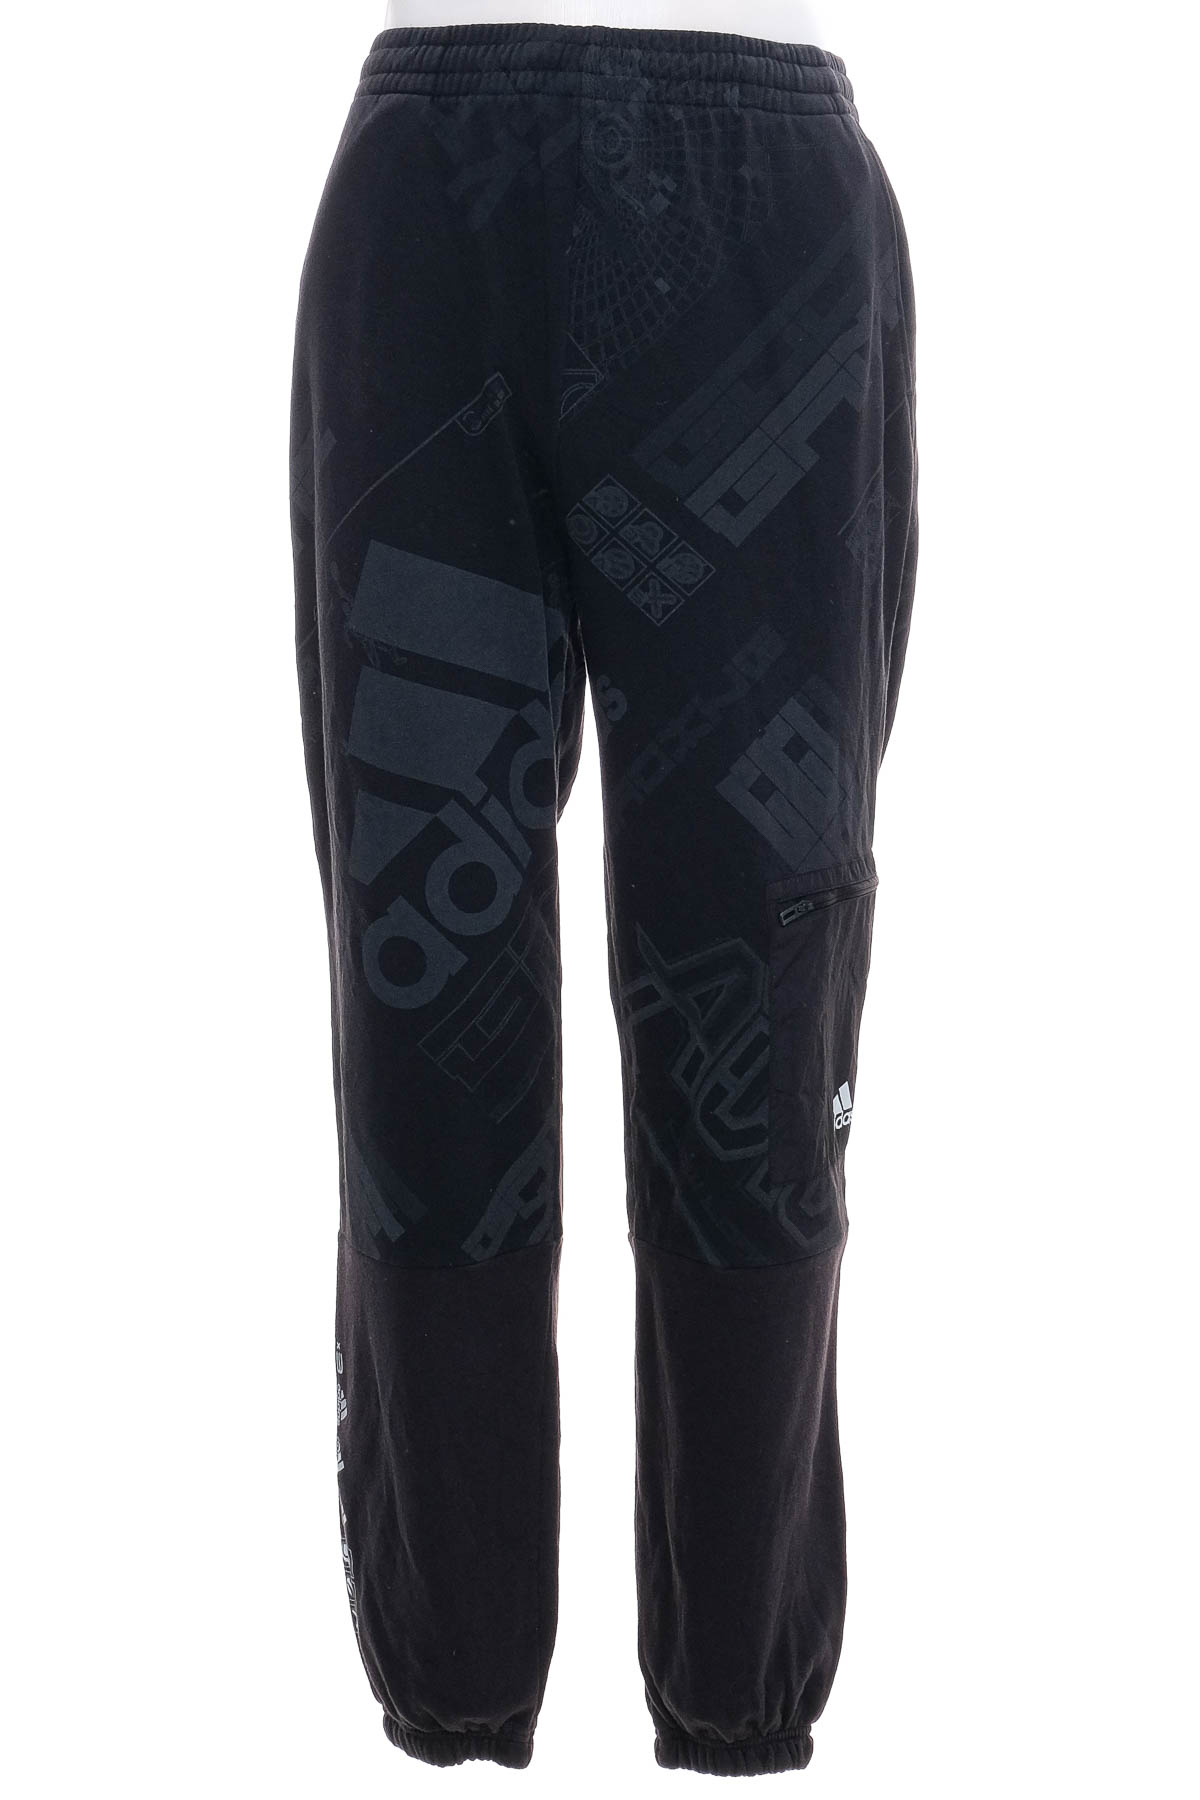 Spodnie sportowe dla chłopców - Adidas - 0